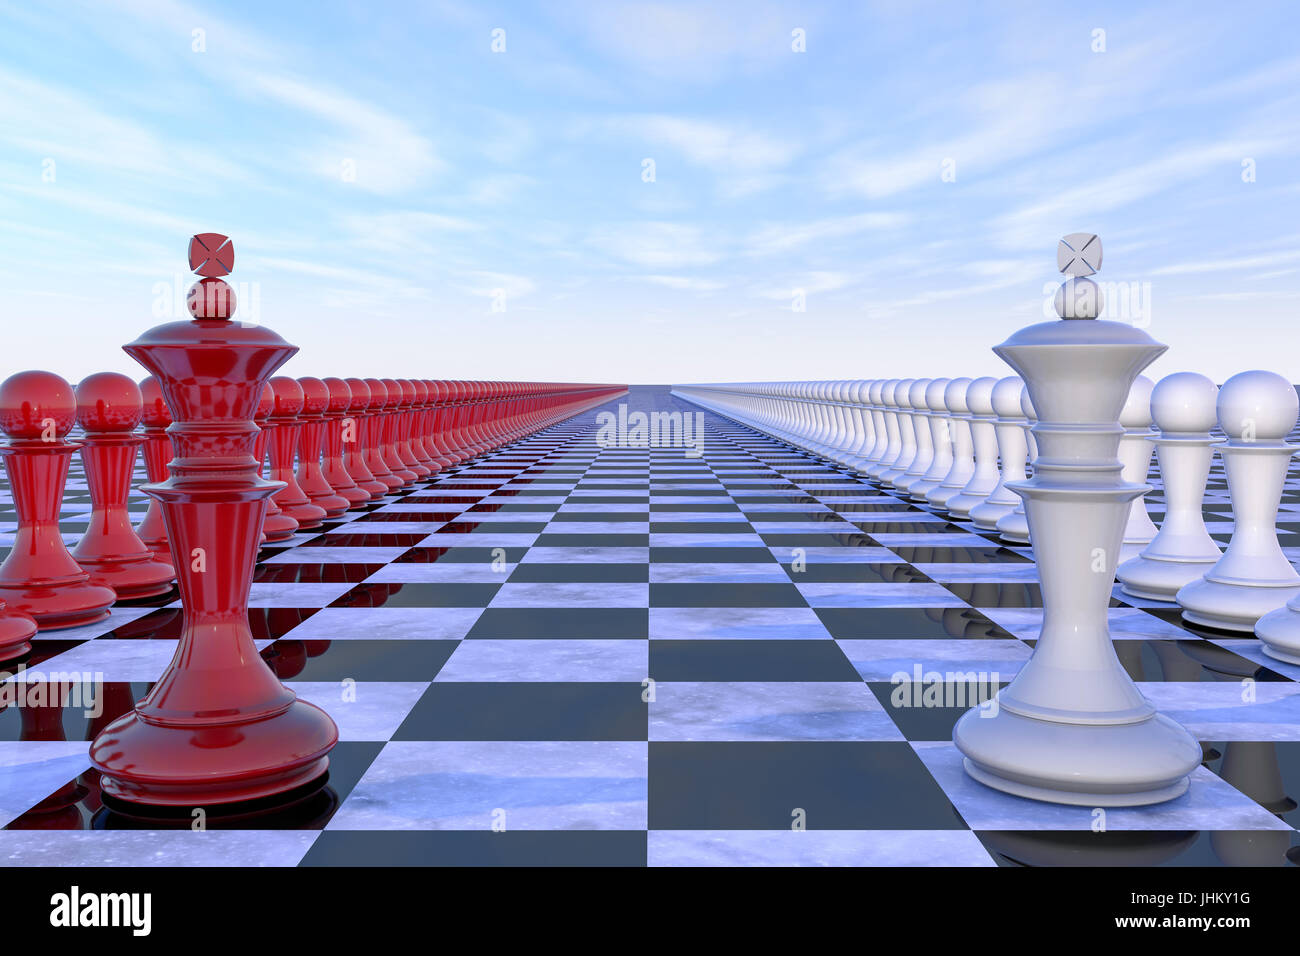 militärisch-politische Konzept. Schach-Feld mit Figuren von Königen, Staats-und Regierungschefs ihre Truppen, rot-weißen Farben sind einander gegenüber aufgereiht. 3D Stockfoto